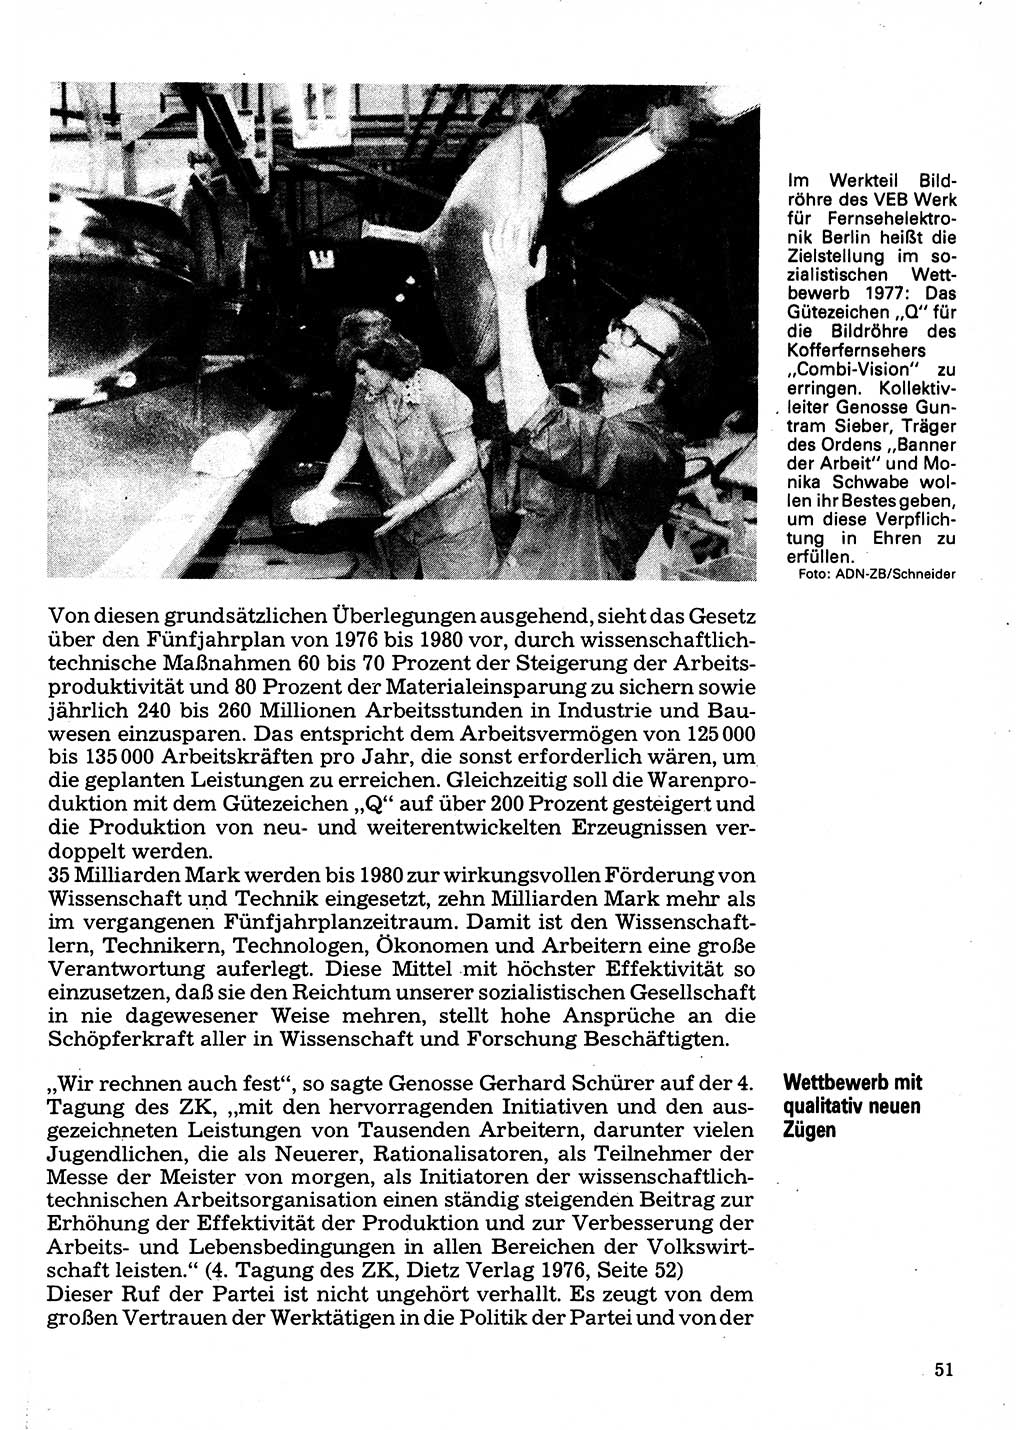 Neuer Weg (NW), Organ des Zentralkomitees (ZK) der SED (Sozialistische Einheitspartei Deutschlands) für Fragen des Parteilebens, 32. Jahrgang [Deutsche Demokratische Republik (DDR)] 1977, Seite 51 (NW ZK SED DDR 1977, S. 51)